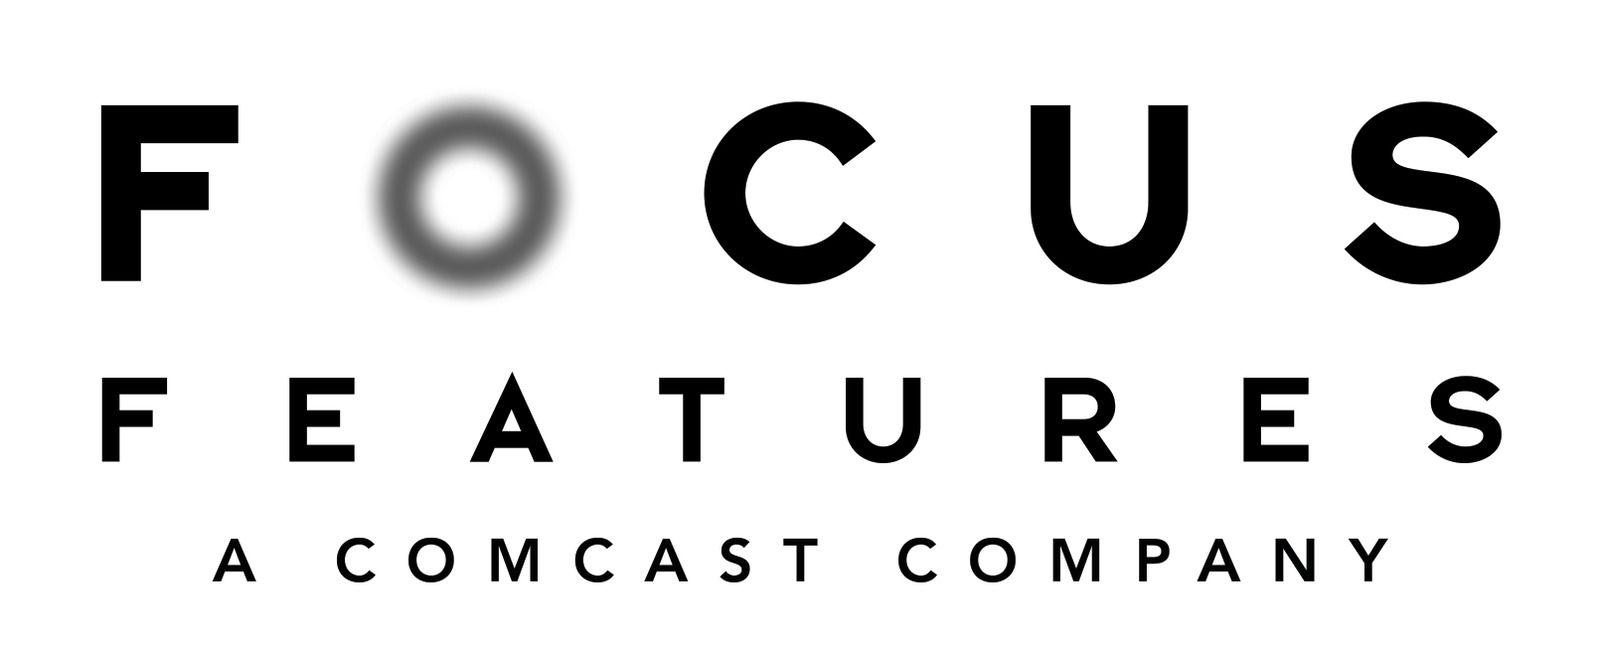 Focus Logo - Focus Features Styleguide